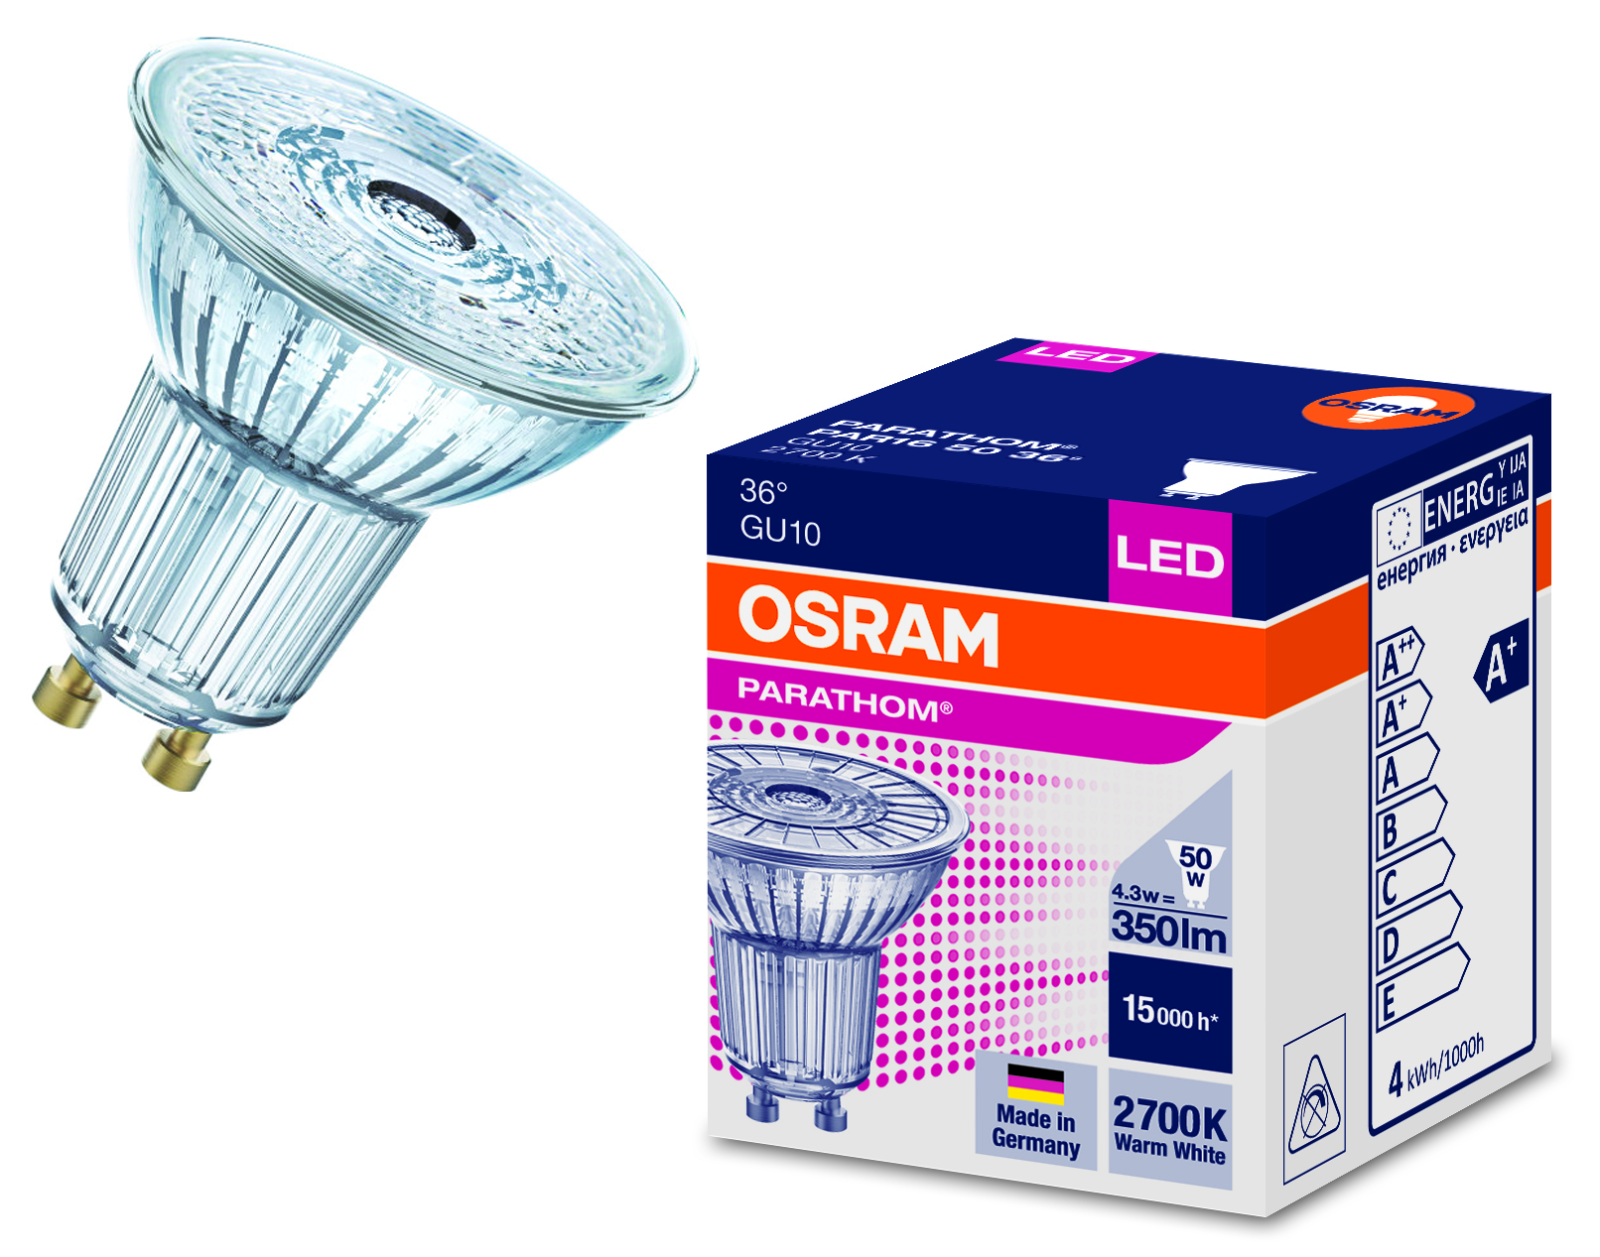 demonstration Incubus fast OSRAM LED Parathom PAR16 GU10 Bulbs - 4.3W 36° Degree 2700K / 3000K / 4000K  | eBay